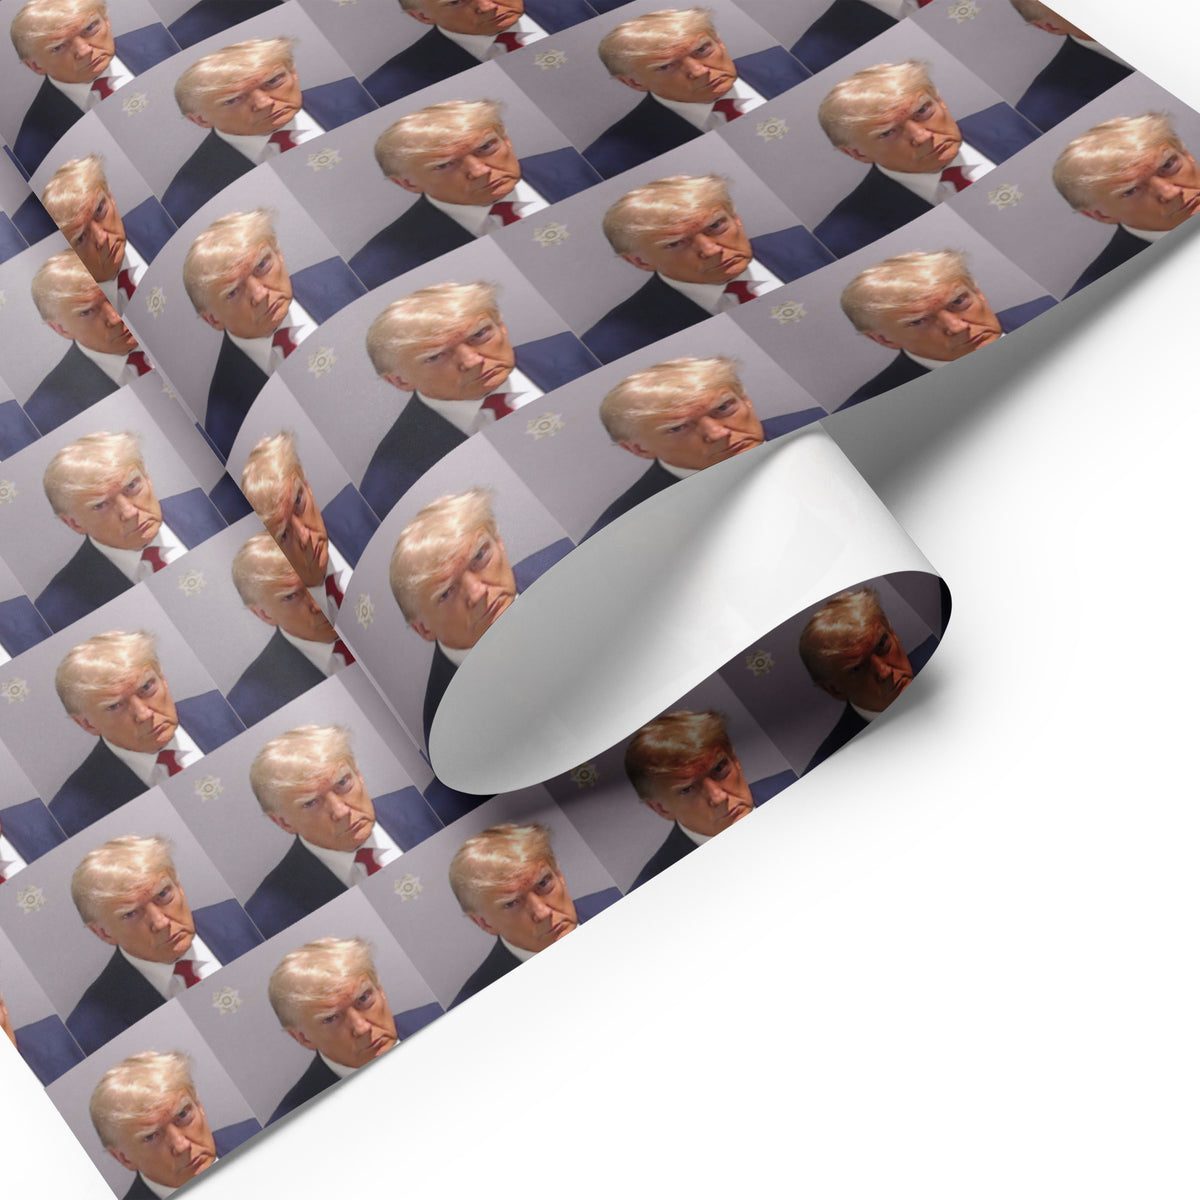 Trump Mugshot Wrapping Paper Sheets - Liberty Maniacs